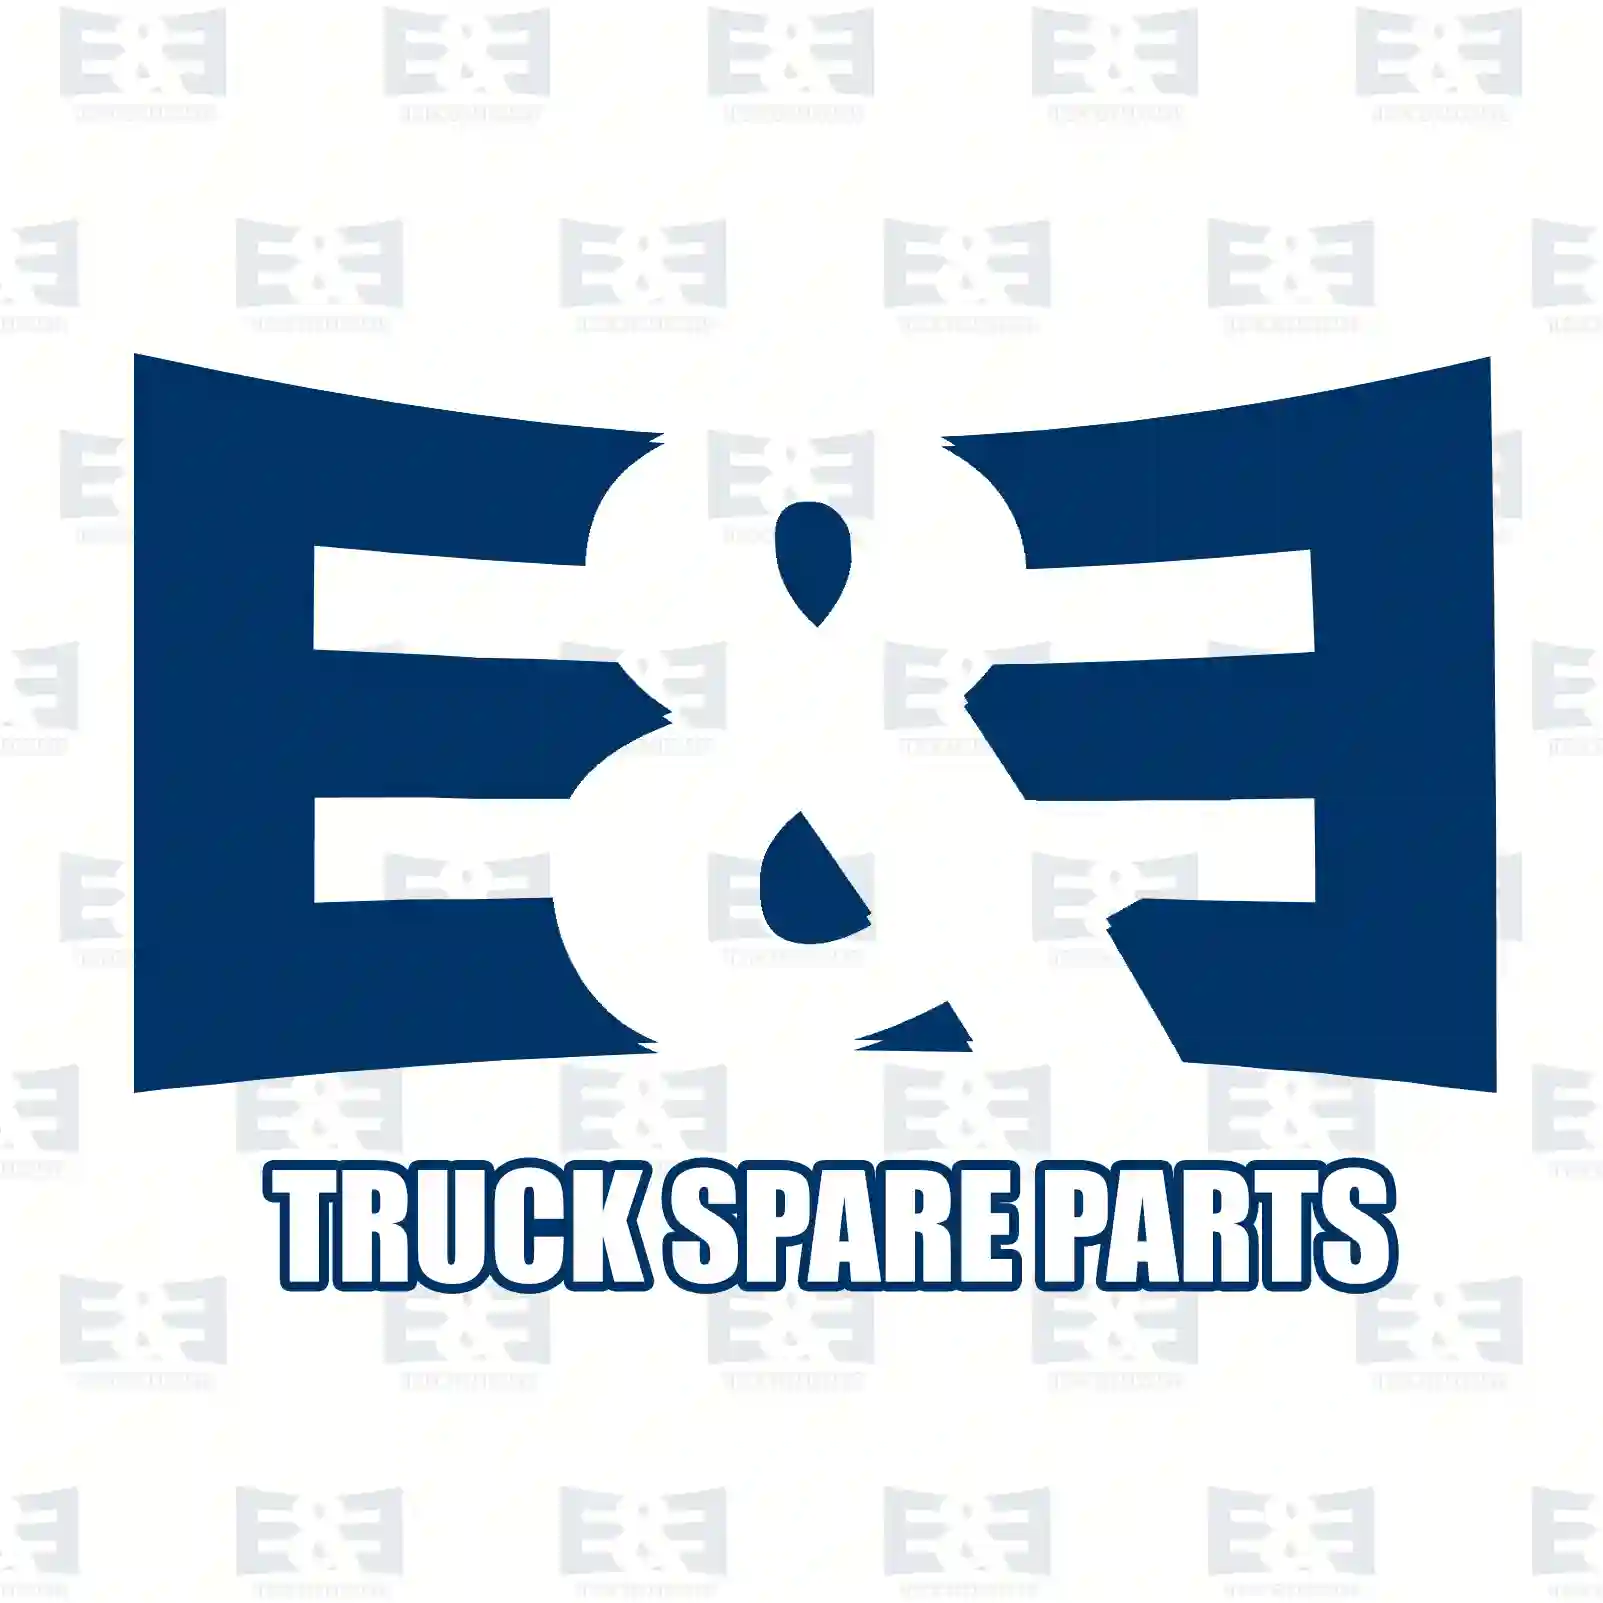 Camshaft, 2E2206772, 20757636, 21110845, ZG30388-0008 ||  2E2206772 E&E Truck Spare Parts | Truck Spare Parts, Auotomotive Spare Parts Camshaft, 2E2206772, 20757636, 21110845, ZG30388-0008 ||  2E2206772 E&E Truck Spare Parts | Truck Spare Parts, Auotomotive Spare Parts